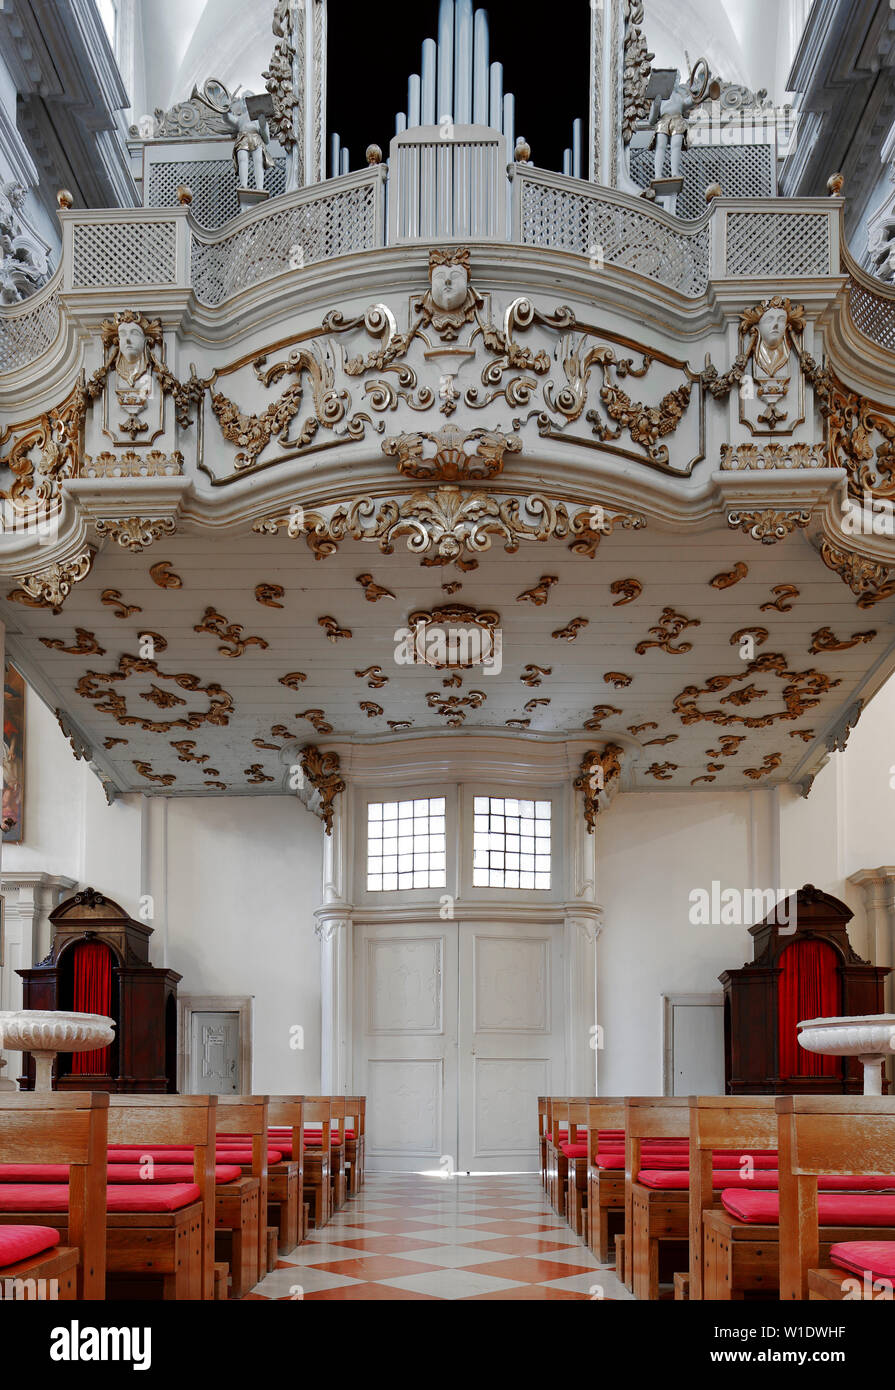 Saint Ignatius church interior,Dubrovnik,Croatia Stock Photo